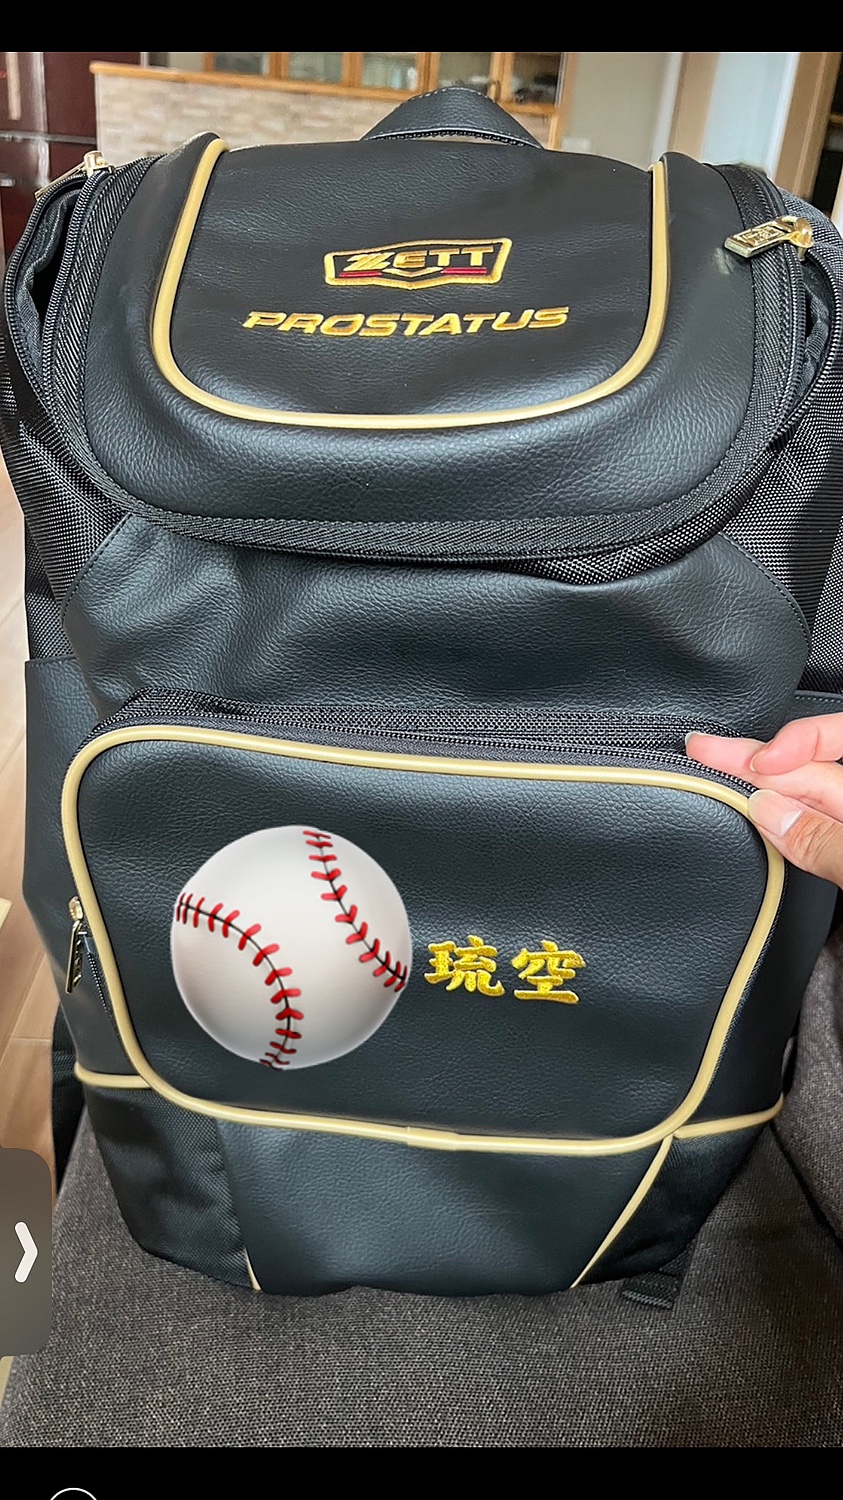 公式ストア 本体別売り バッグ用刺繍オプション ポケット取り外し可能なバッグ対応 最大3段まで刺繍可 デカ文字刺繍対応 野球 ソフトボール バッグ刺繍可  B